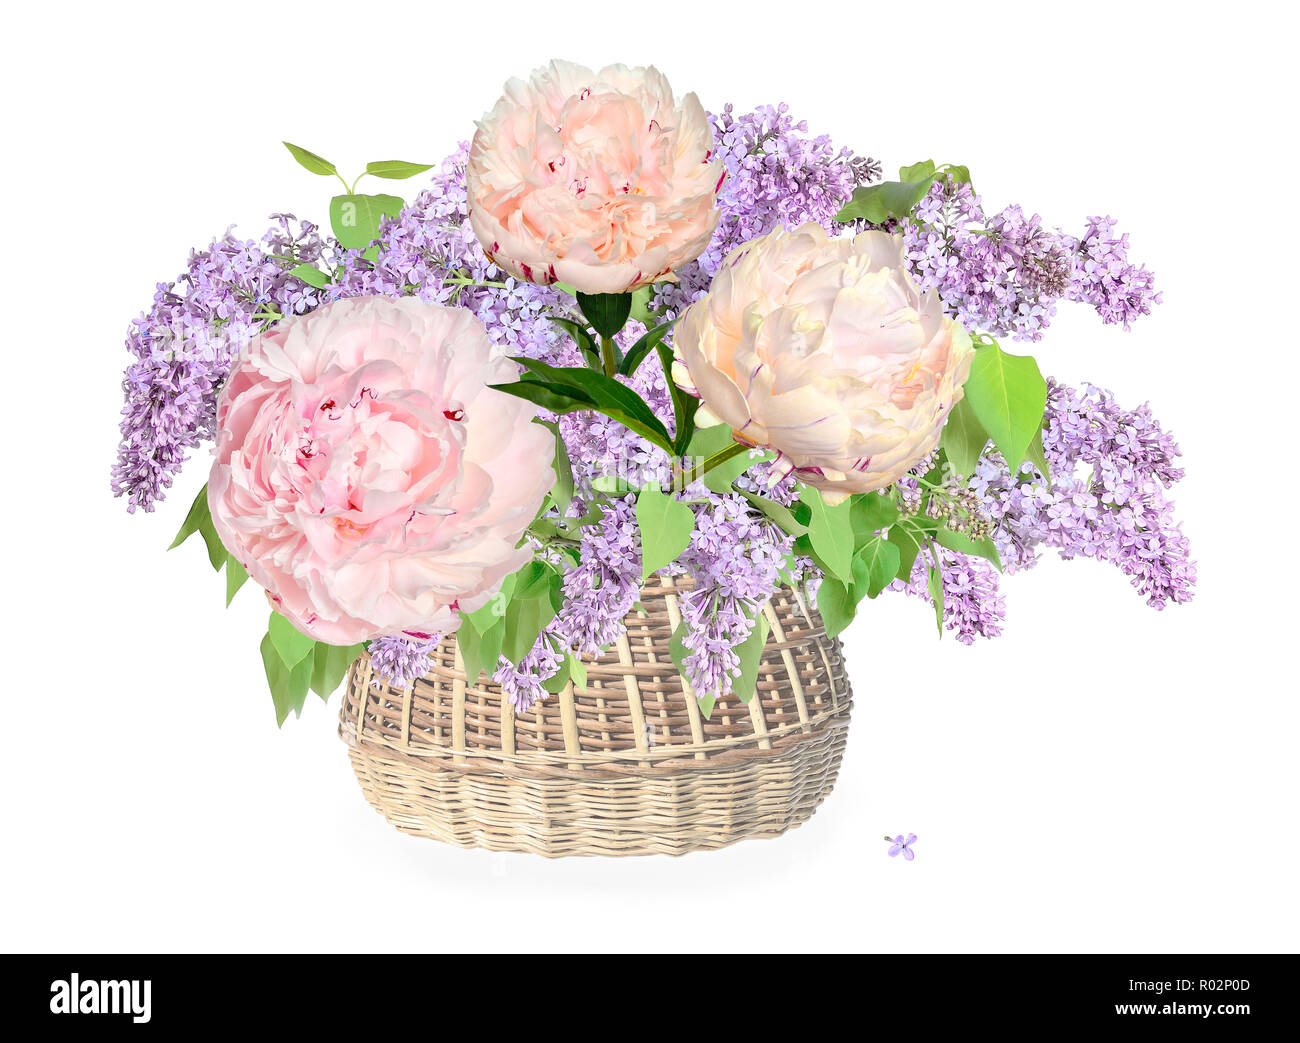 Suave romántico ramo de flores de color lila y rosa claro con tono cremoso peonías en cesta de mimbre, de cerca, aislado en un fondo blanco - festivos Foto de stock